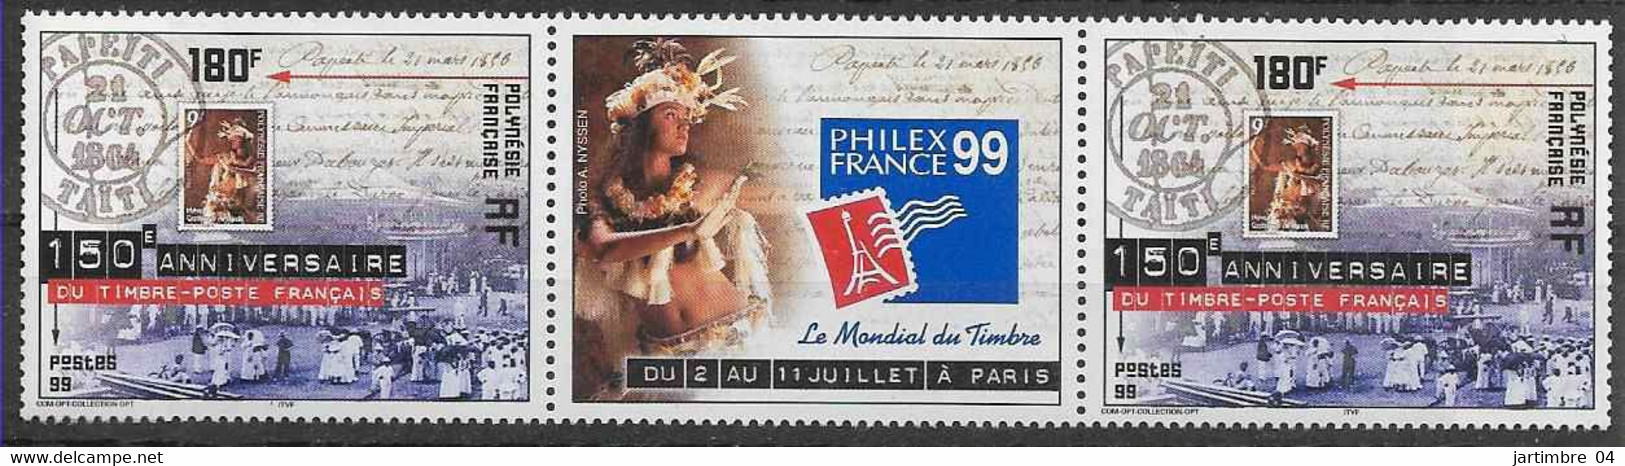 1999 POLYNESIE FRANCAISE 602** Philexfrance, Timbre Sur Timbre, Paire Avec Vignette - Unused Stamps